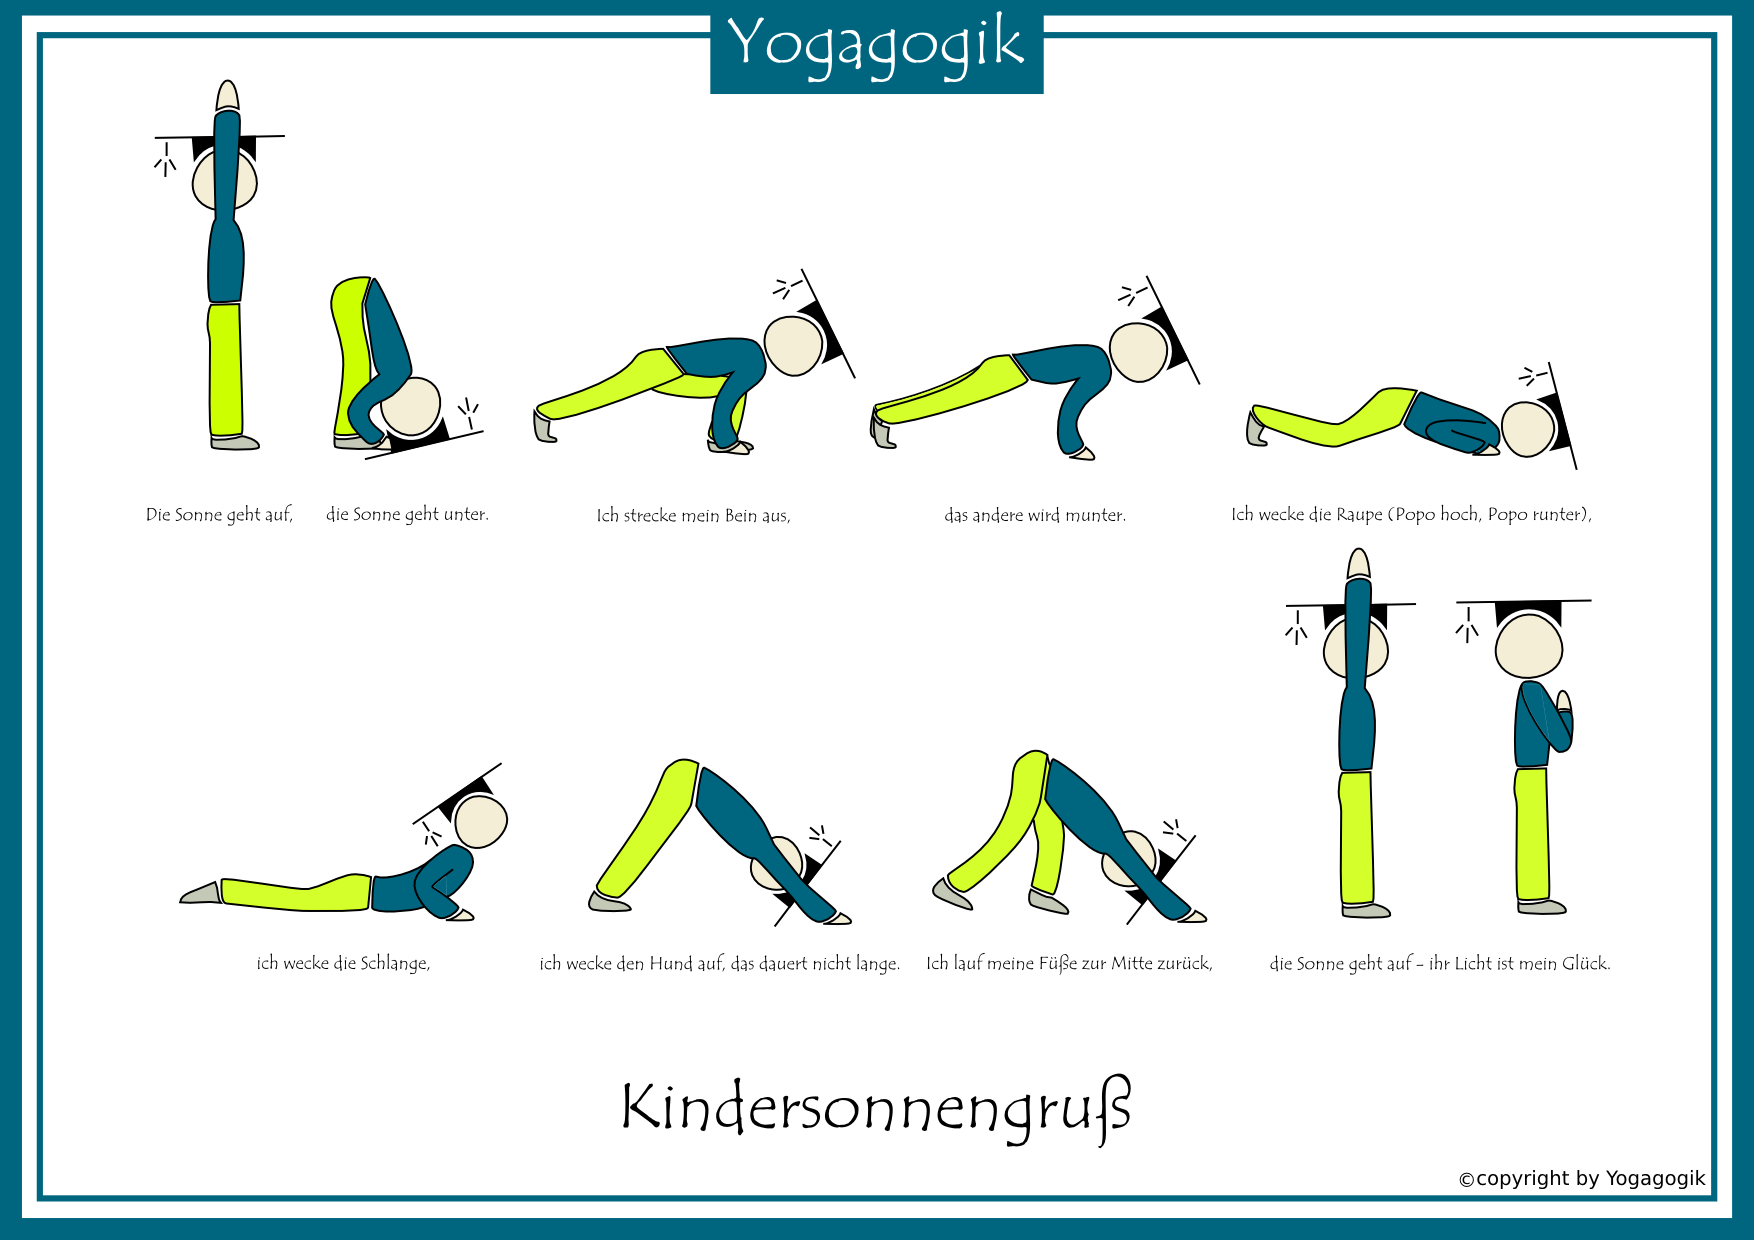 Kindersonnengruß - Yogagogik: Kinderyoga Ausbildung Berlin